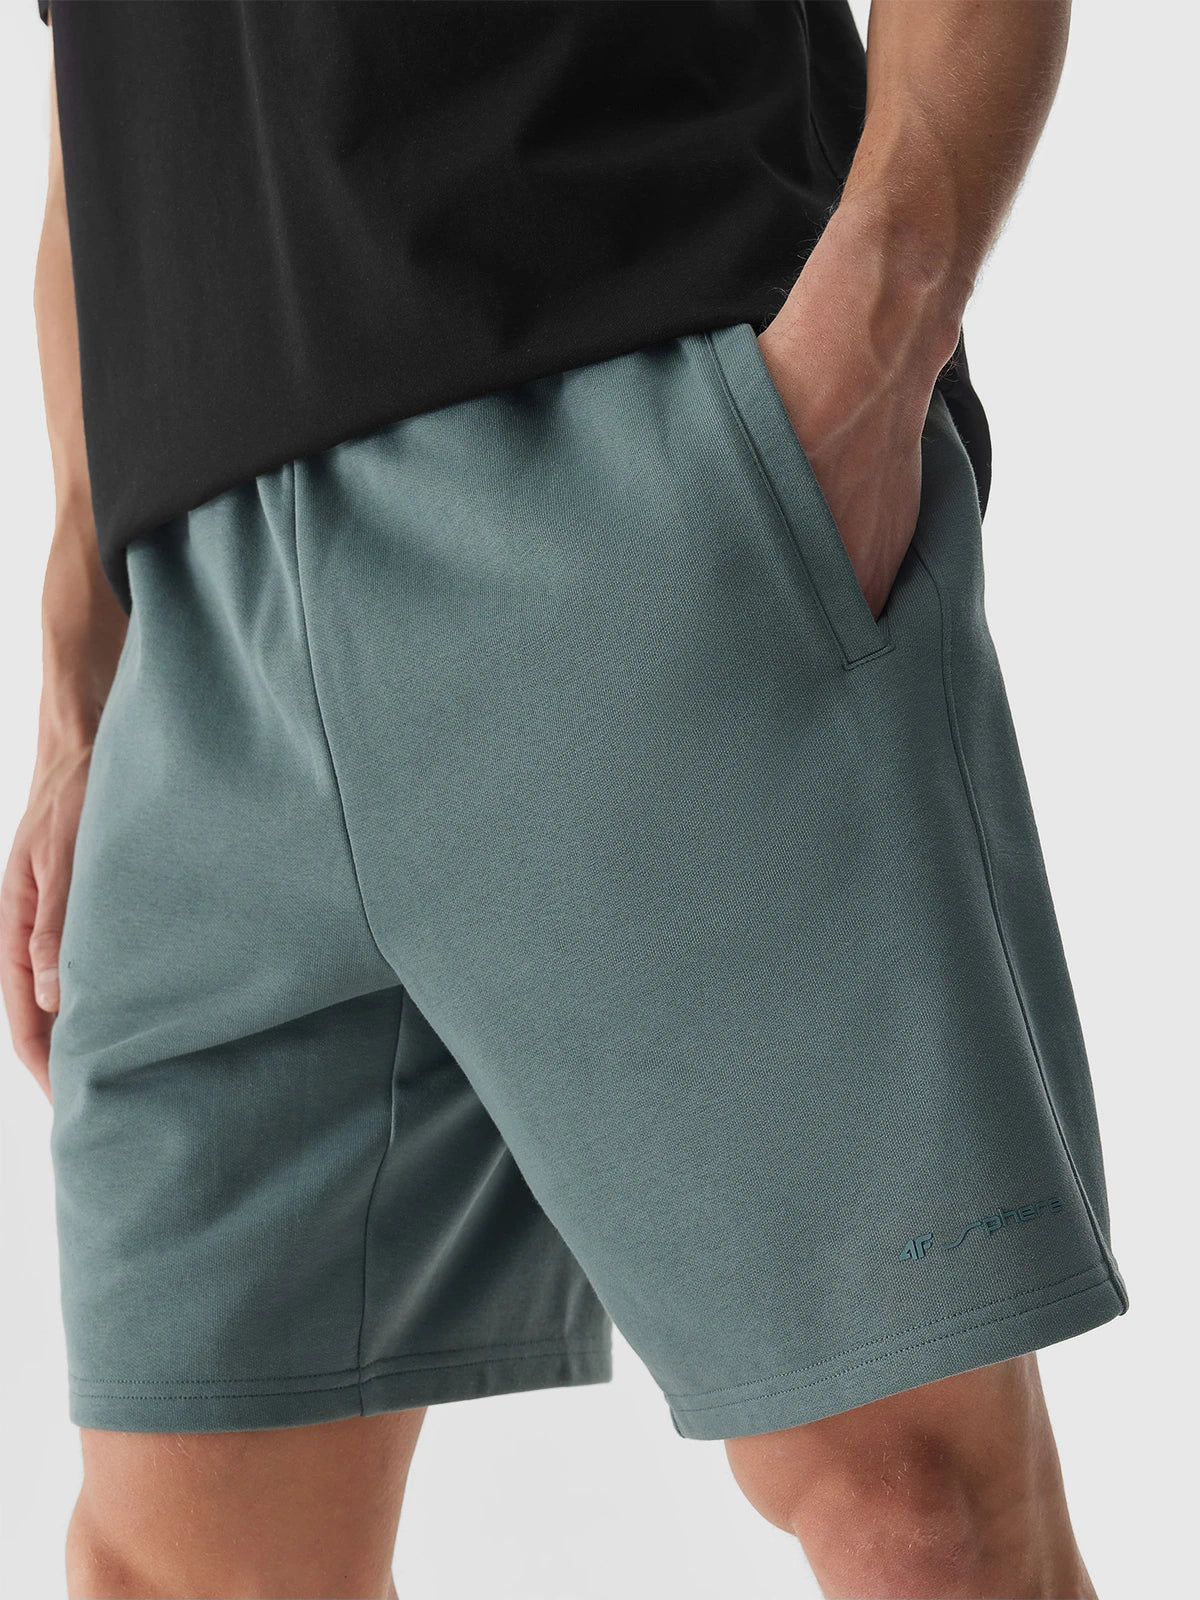 Pantaloni scurți casual pentru bărbați 4F M342 4FWSS24TSHOM342 Olive